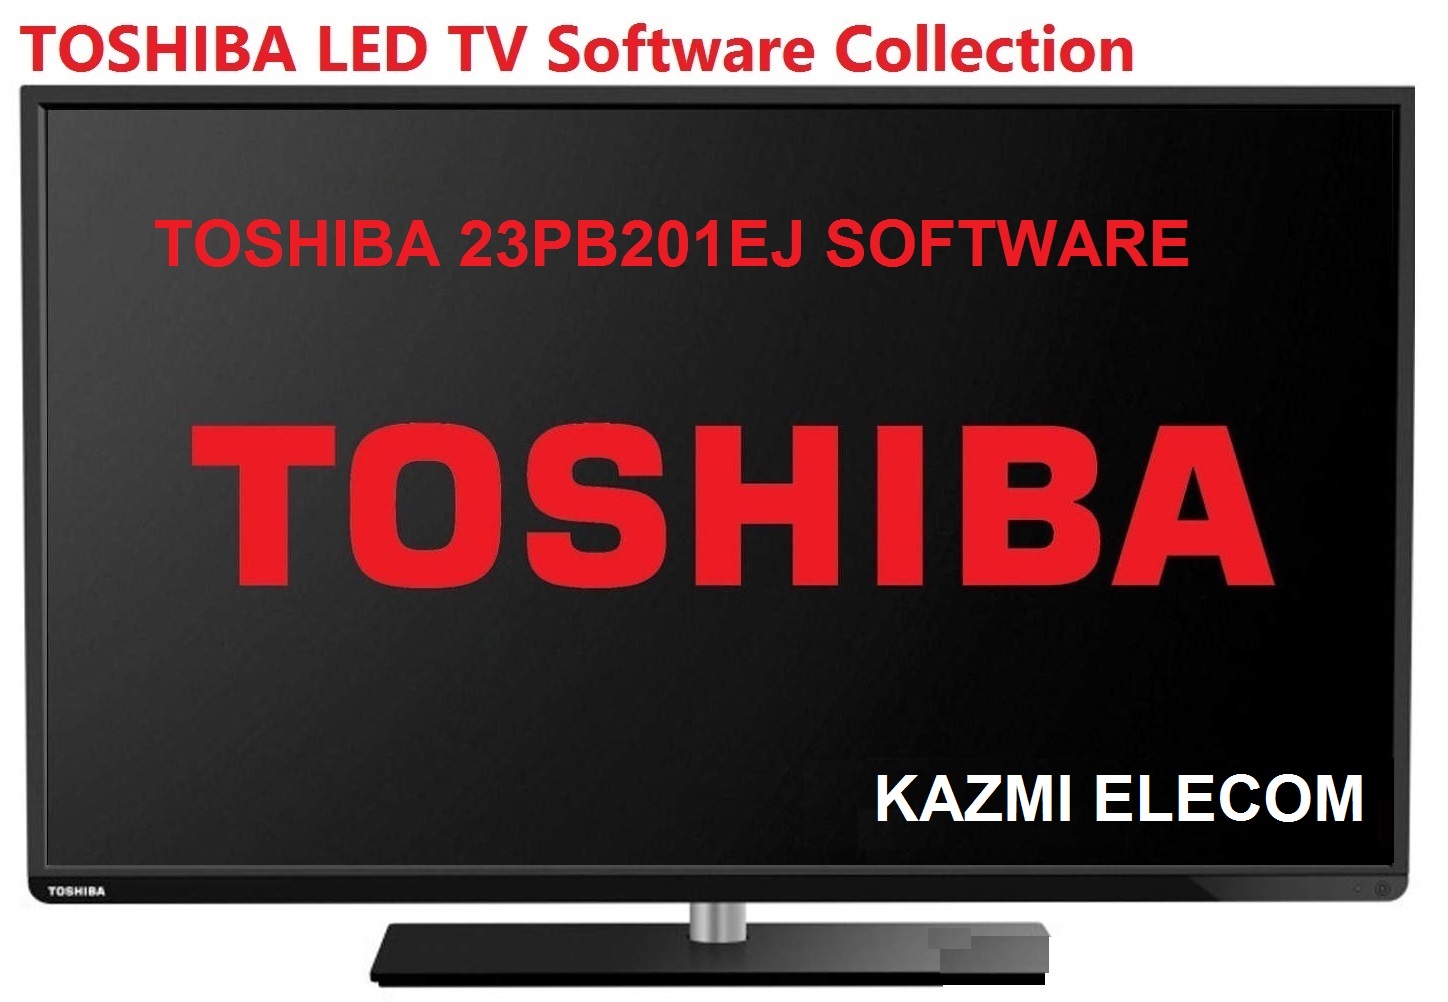 Toshiba 23Pb201Ej